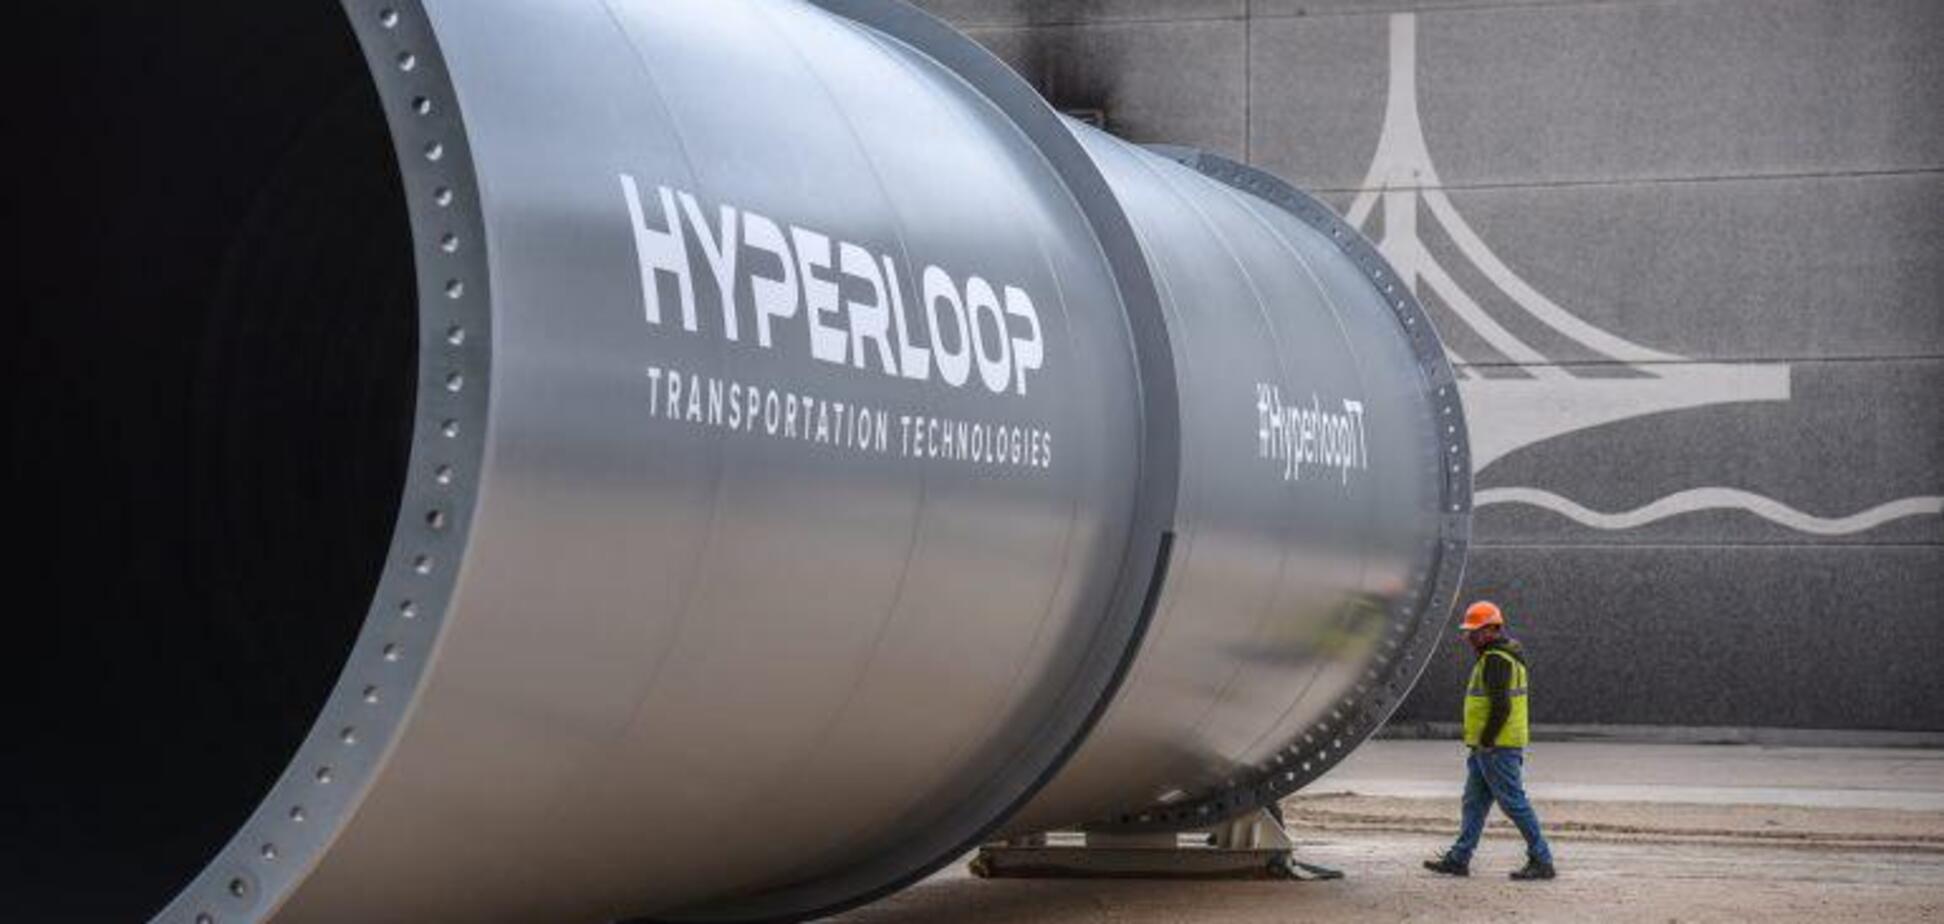 Hyperloop представила первую в мире сверхскоростную пассажирскую капсулу